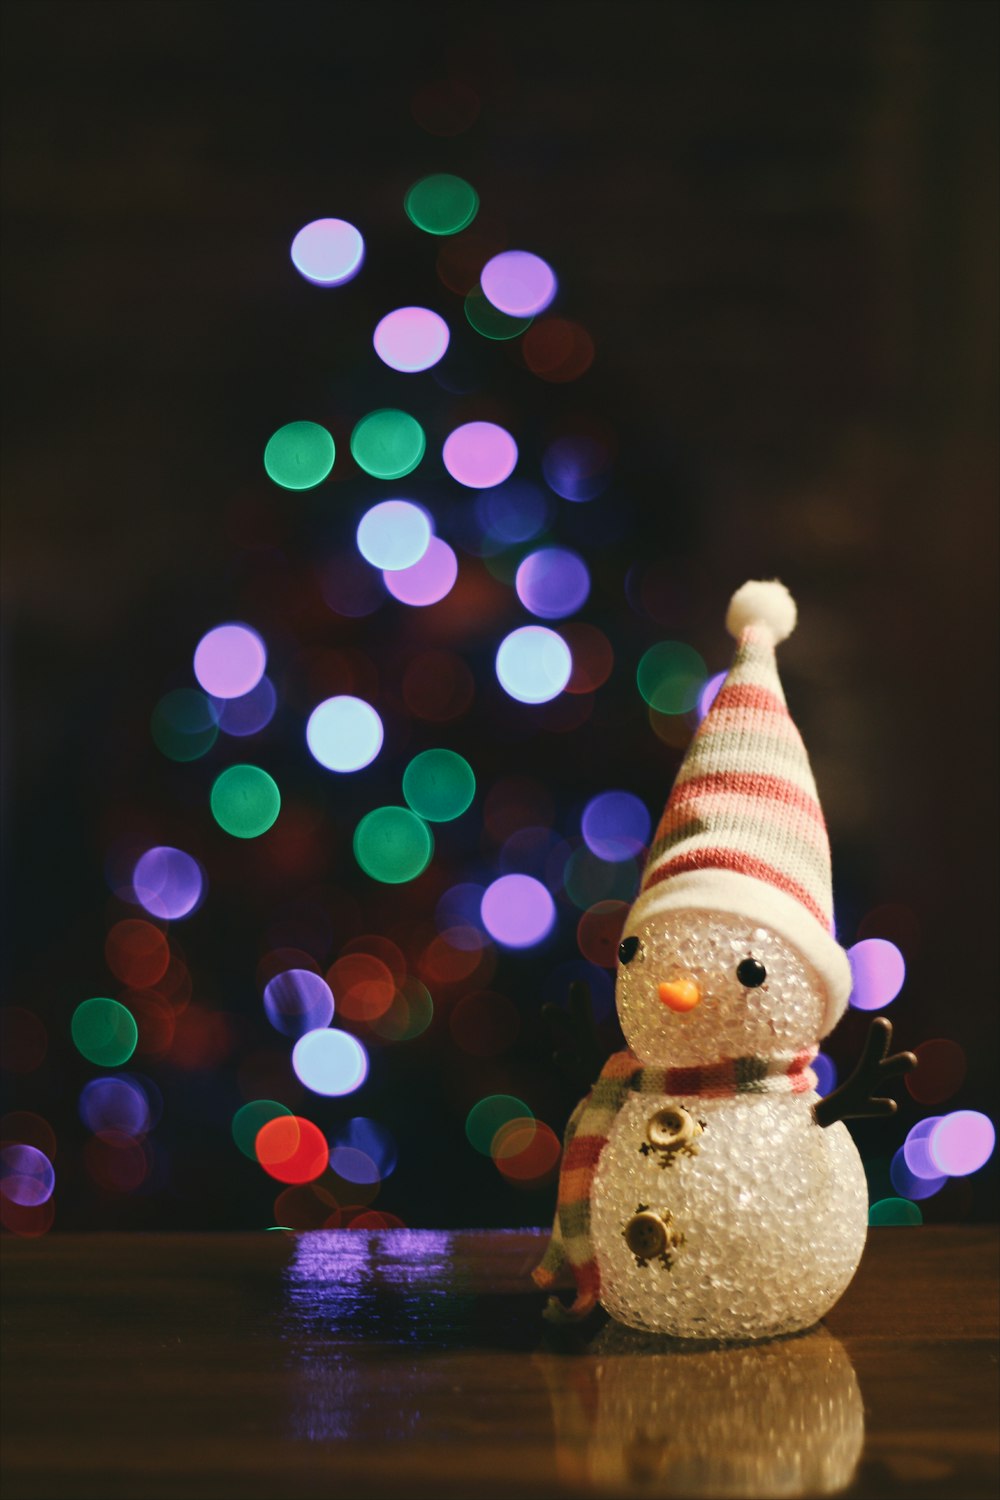 크리스마스 트리 앞 바닥에 앉아 있는 작은 눈사람 그림.